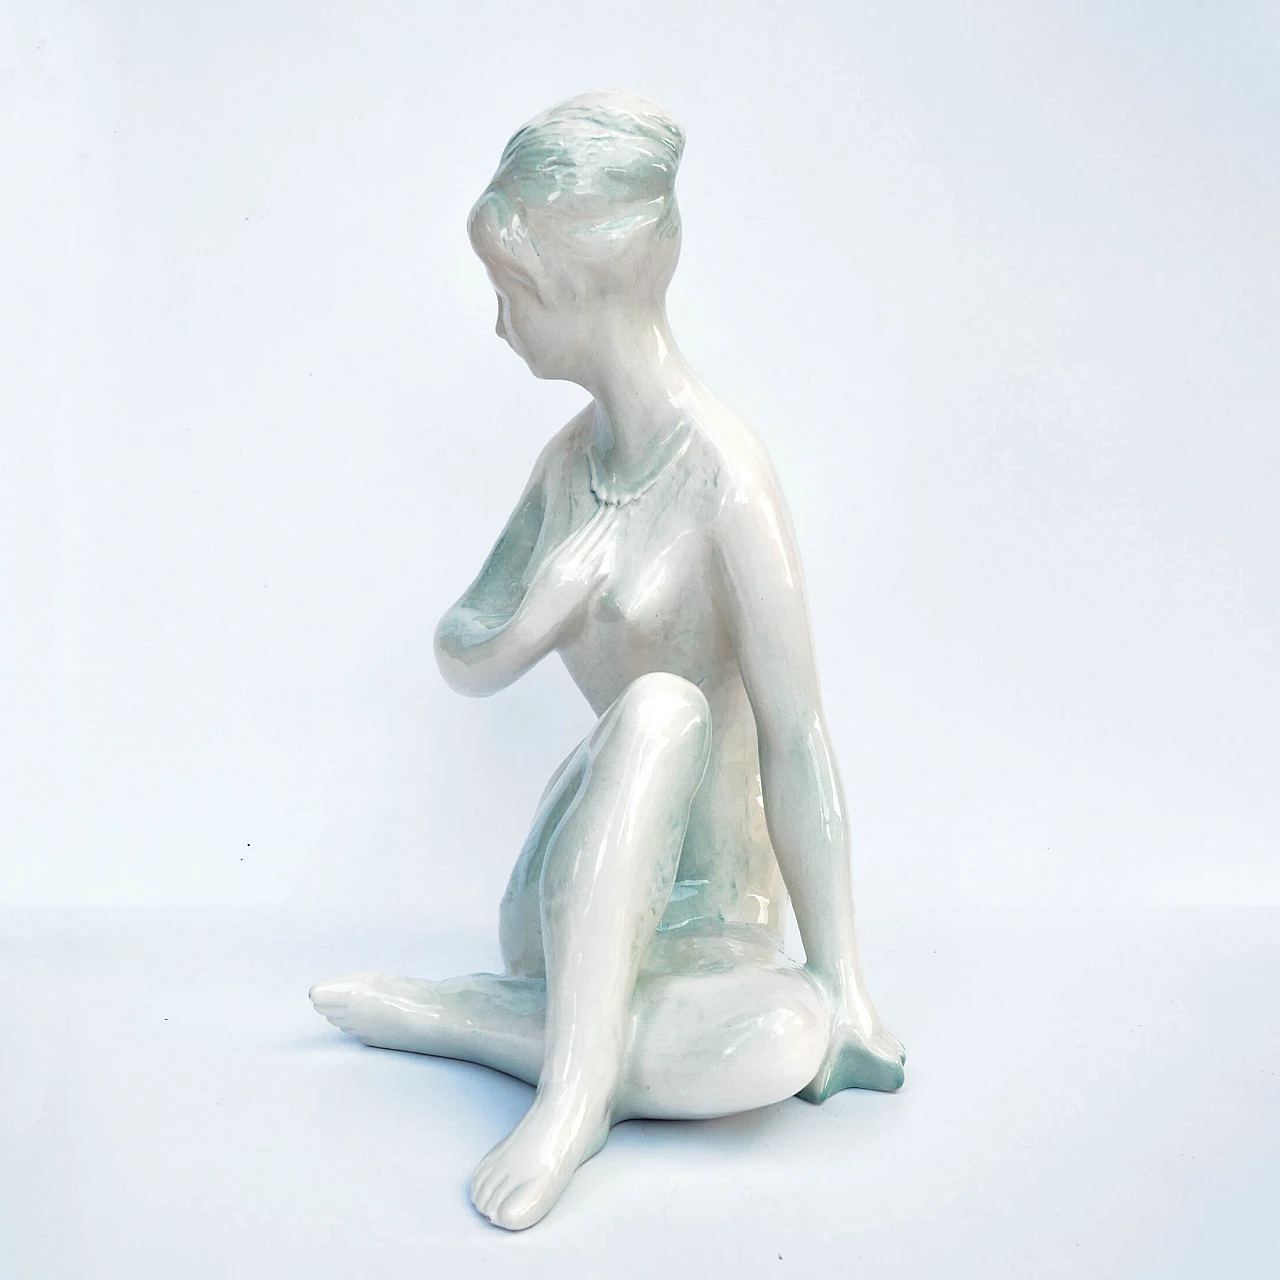 Female nude sculpture by Kokrda Jihokera Bechyně, 1960s 10